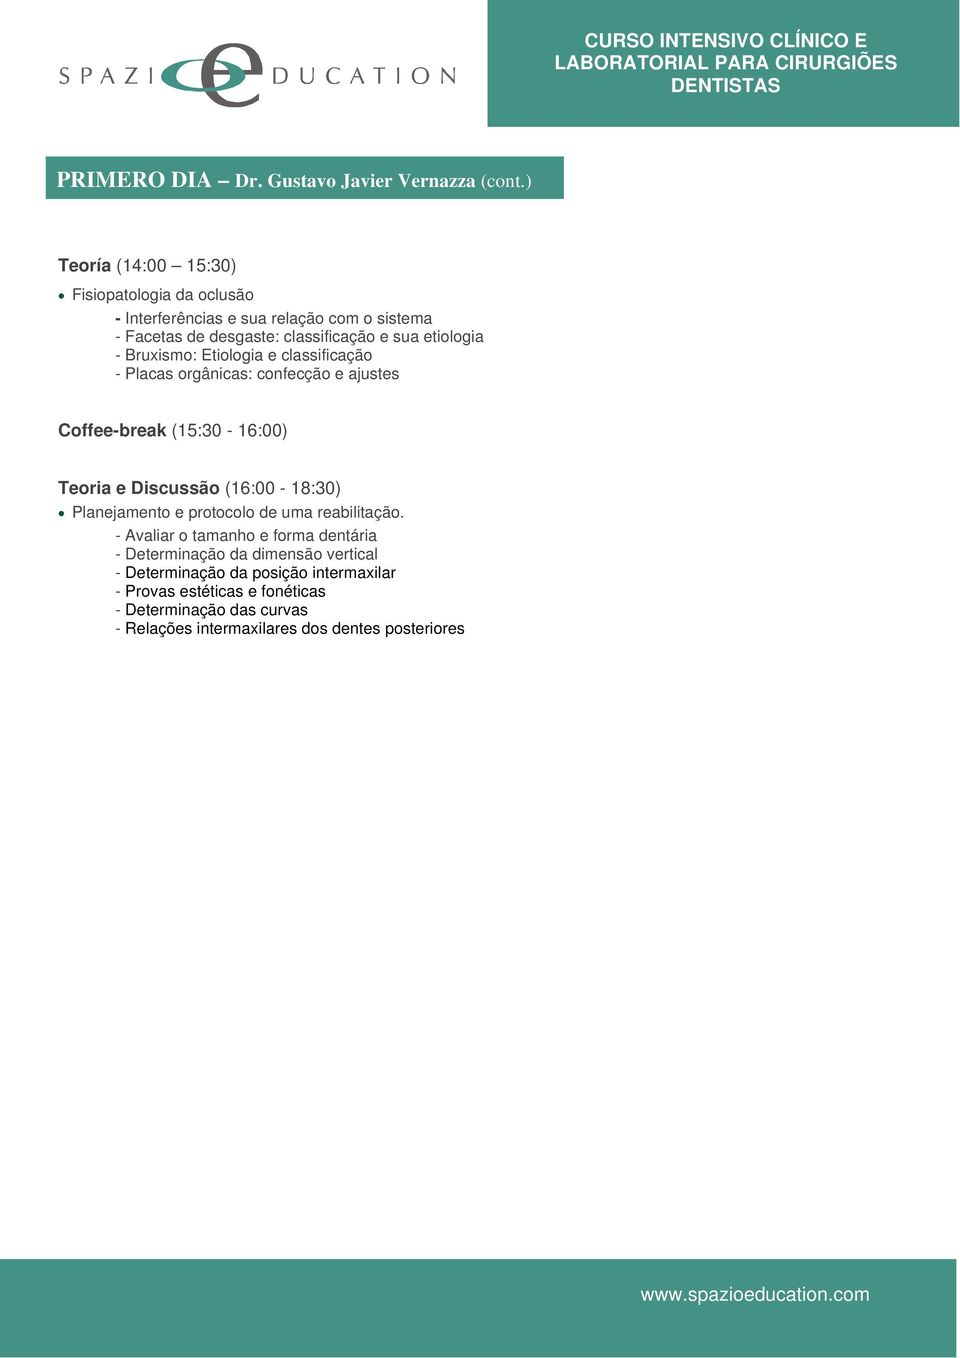 Bruxismo: Etiologia e classificação - Placas orgânicas: confecção e ajustes Coffee-break (15:30-16:00) Teoria e Discussão (16:00-18:30) Planejamento